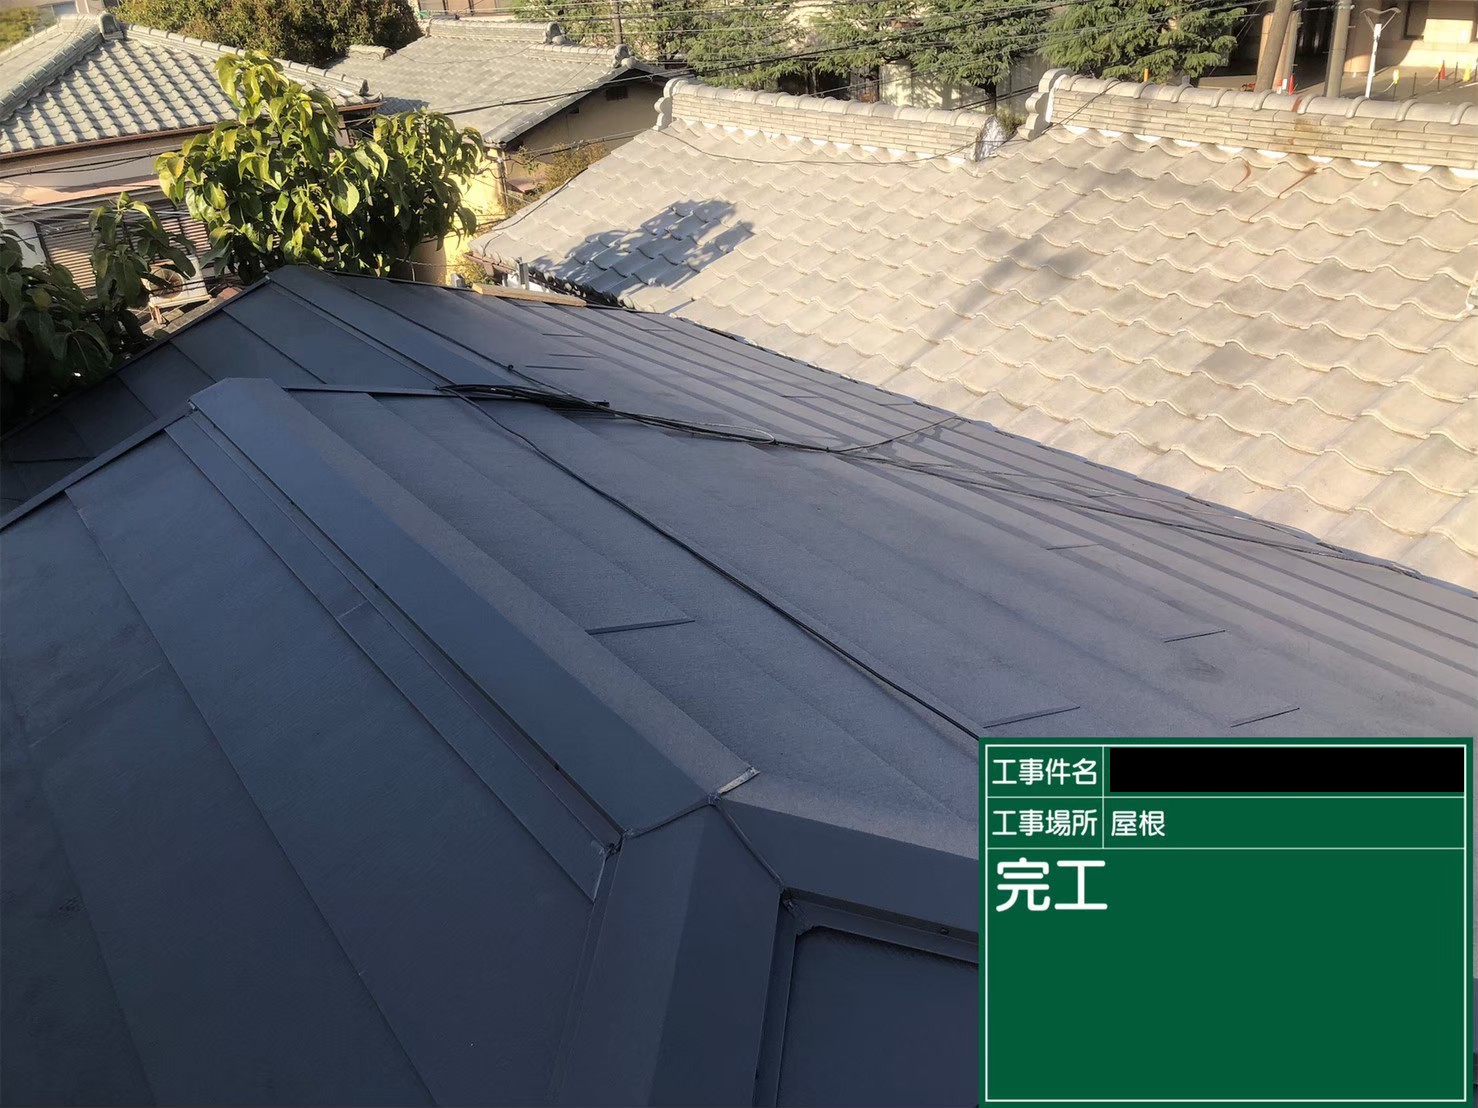 大阪市城東区東中浜で屋根の葺き替え工事を実施致しました